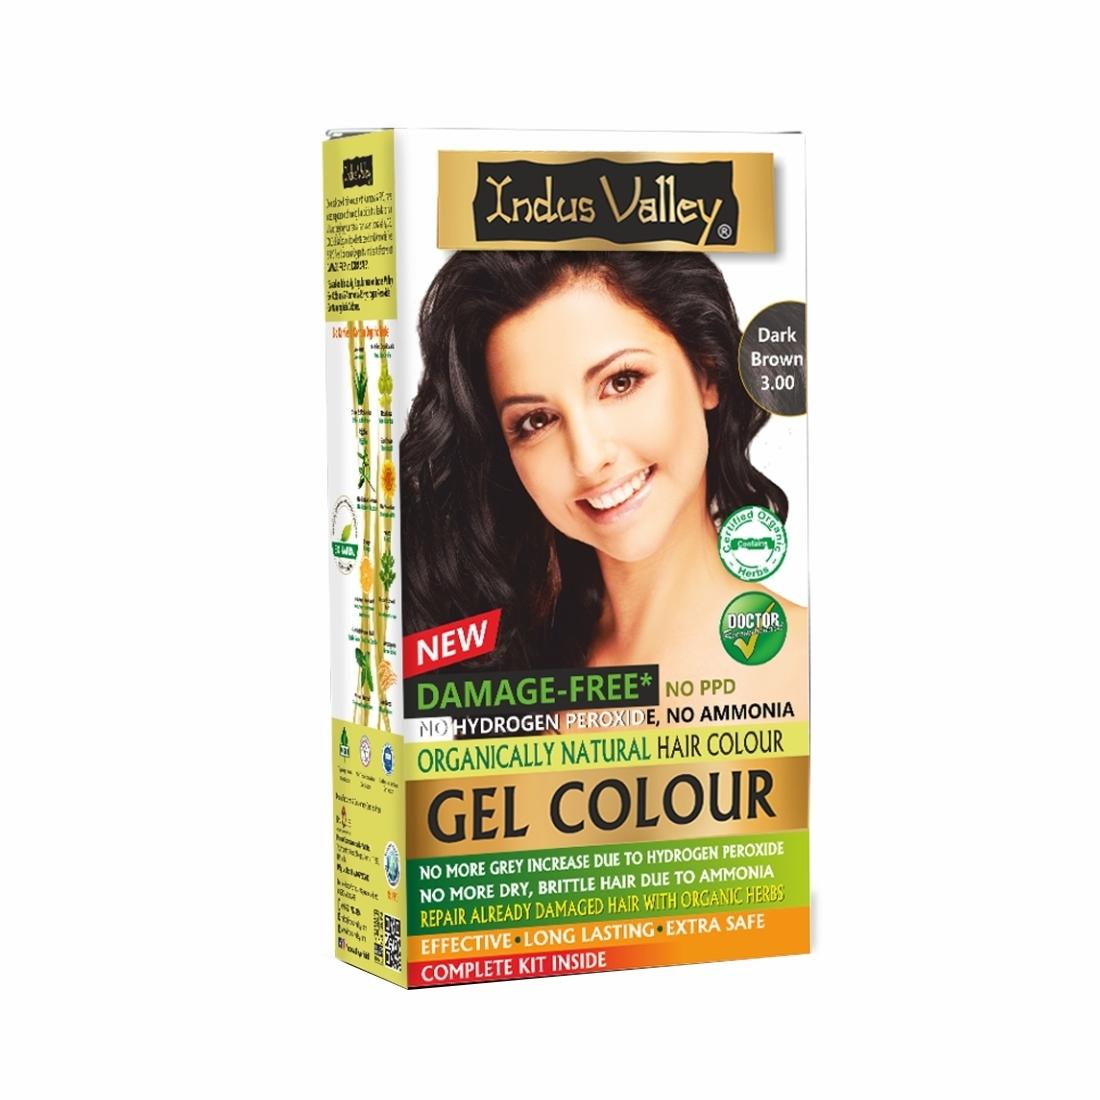 Damage Free Gel Hair Colour - Dark Brown  (Touch-Up/Trial Pack)  (45ml+5g) - JioMart